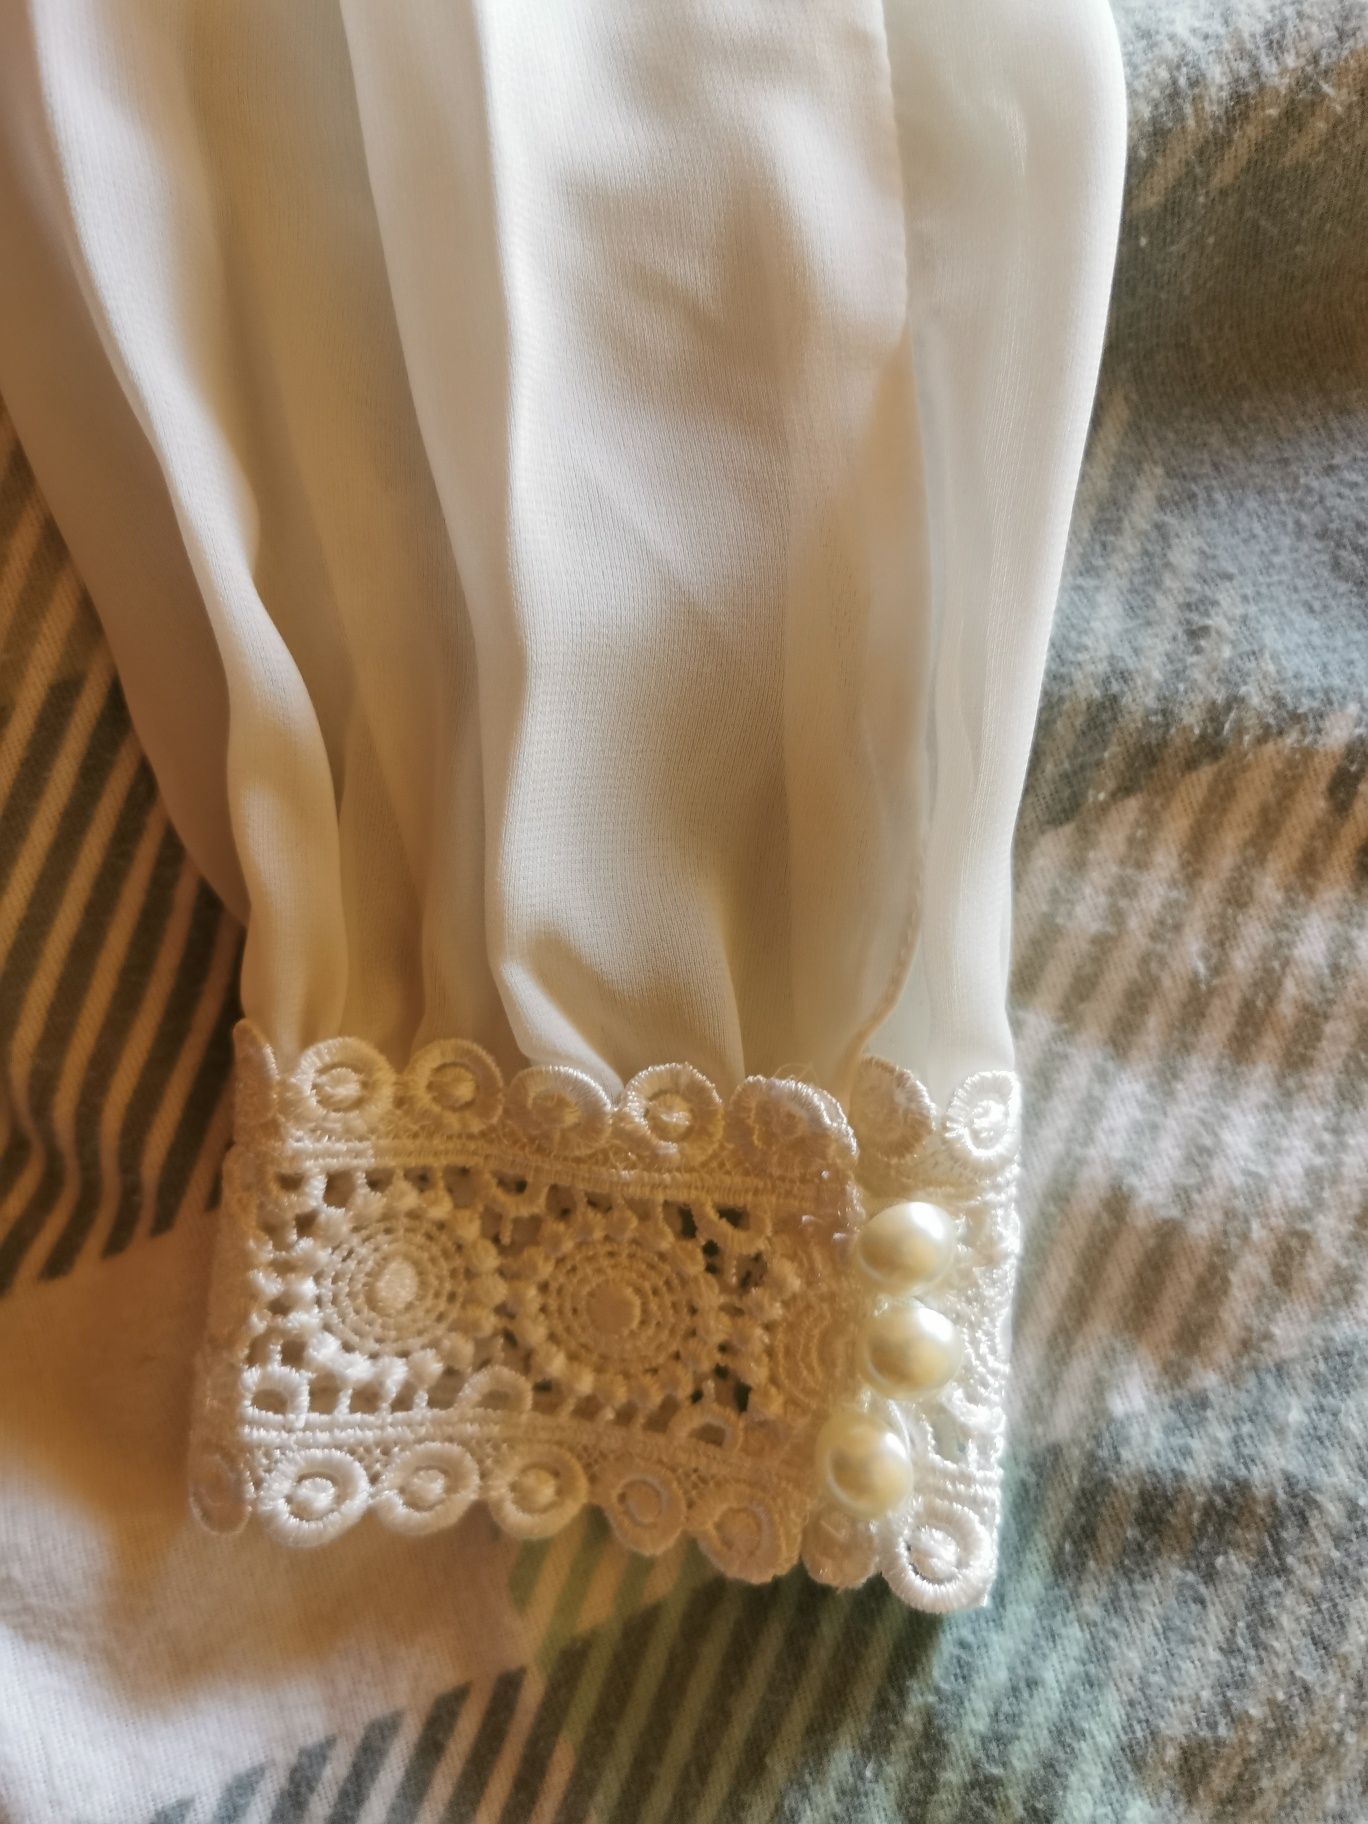 Suknia ślubna boho rozmiar M z długim rękawem